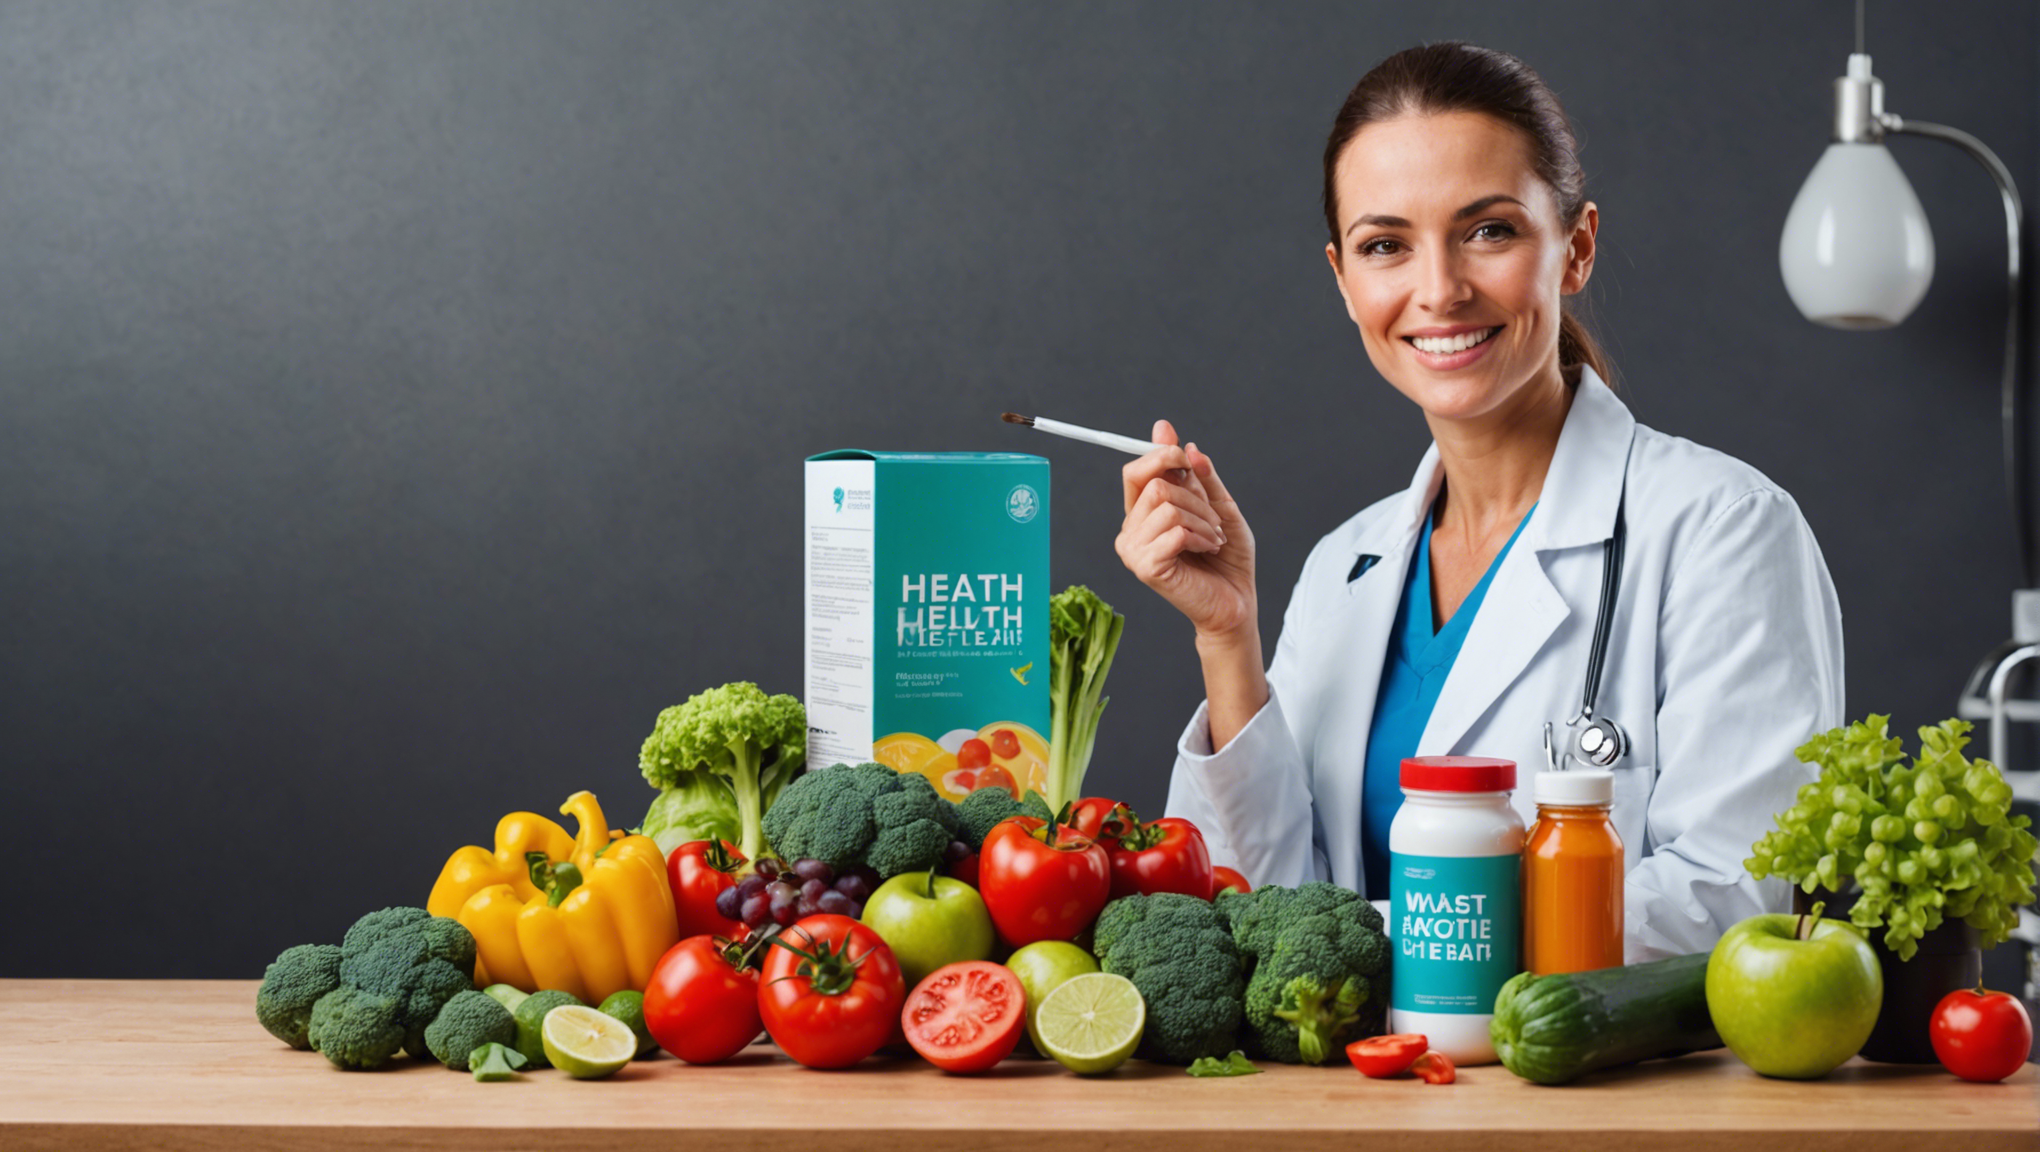 découvrez les produits à éviter pour préserver votre santé et adopter un mode de vie sain. informez-vous sur les aliments et habitudes à bannir pour une meilleure santé.